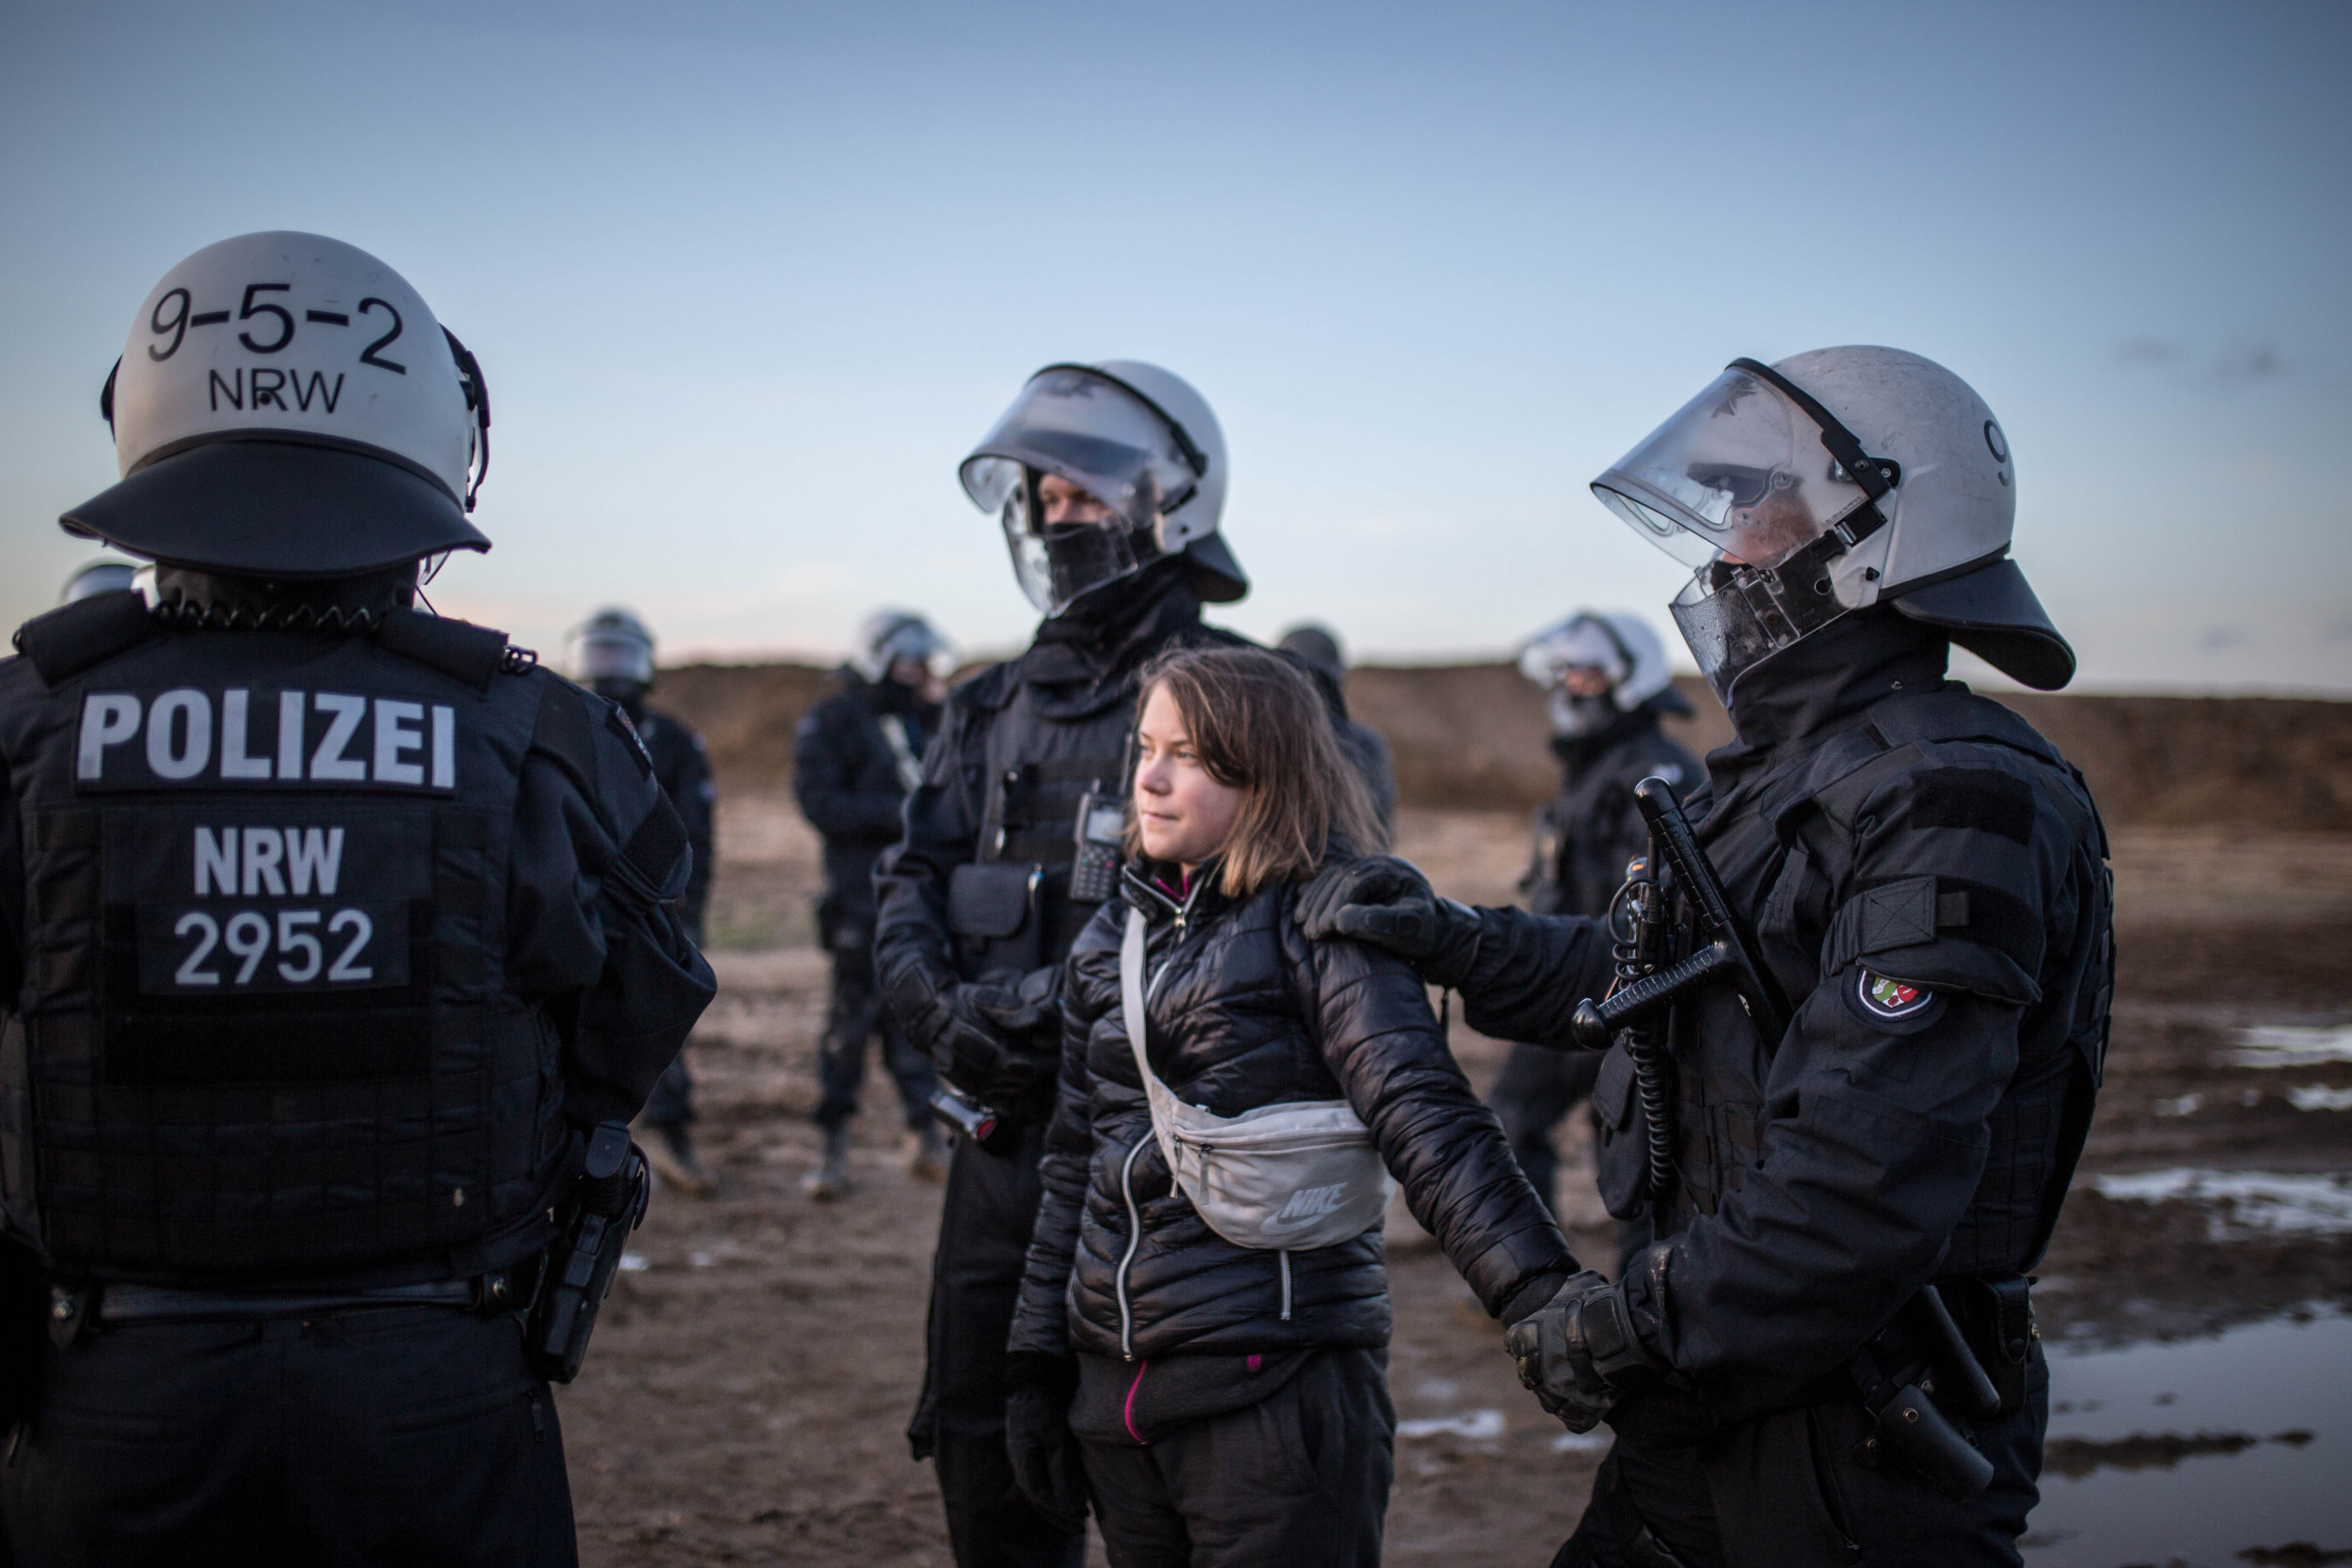 Le immagini dell’arresto a Lützerath dell’attivista Greta Thunberg – VIDEO